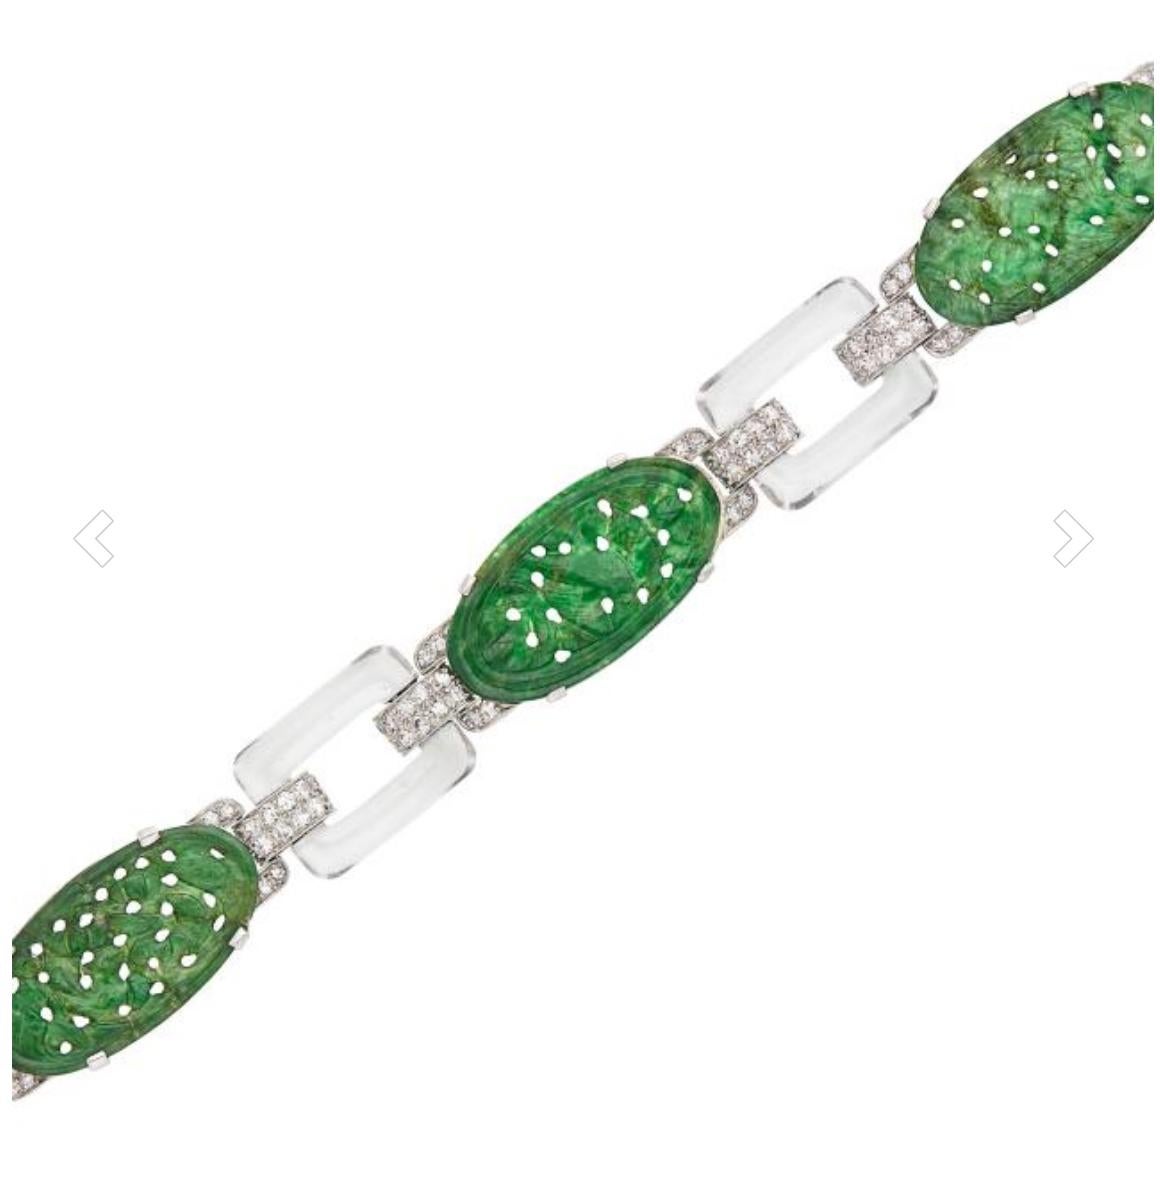 Bracelet Art déco en platine, jade sculpté, cristal de roche et diamants, composé de 4 ovales en jade Nature mesurant approximativement 13,5 x 25,0 mm, divisés en quatre par des supports sertis de diamants, espacés par 4 liens de boucle en cristal